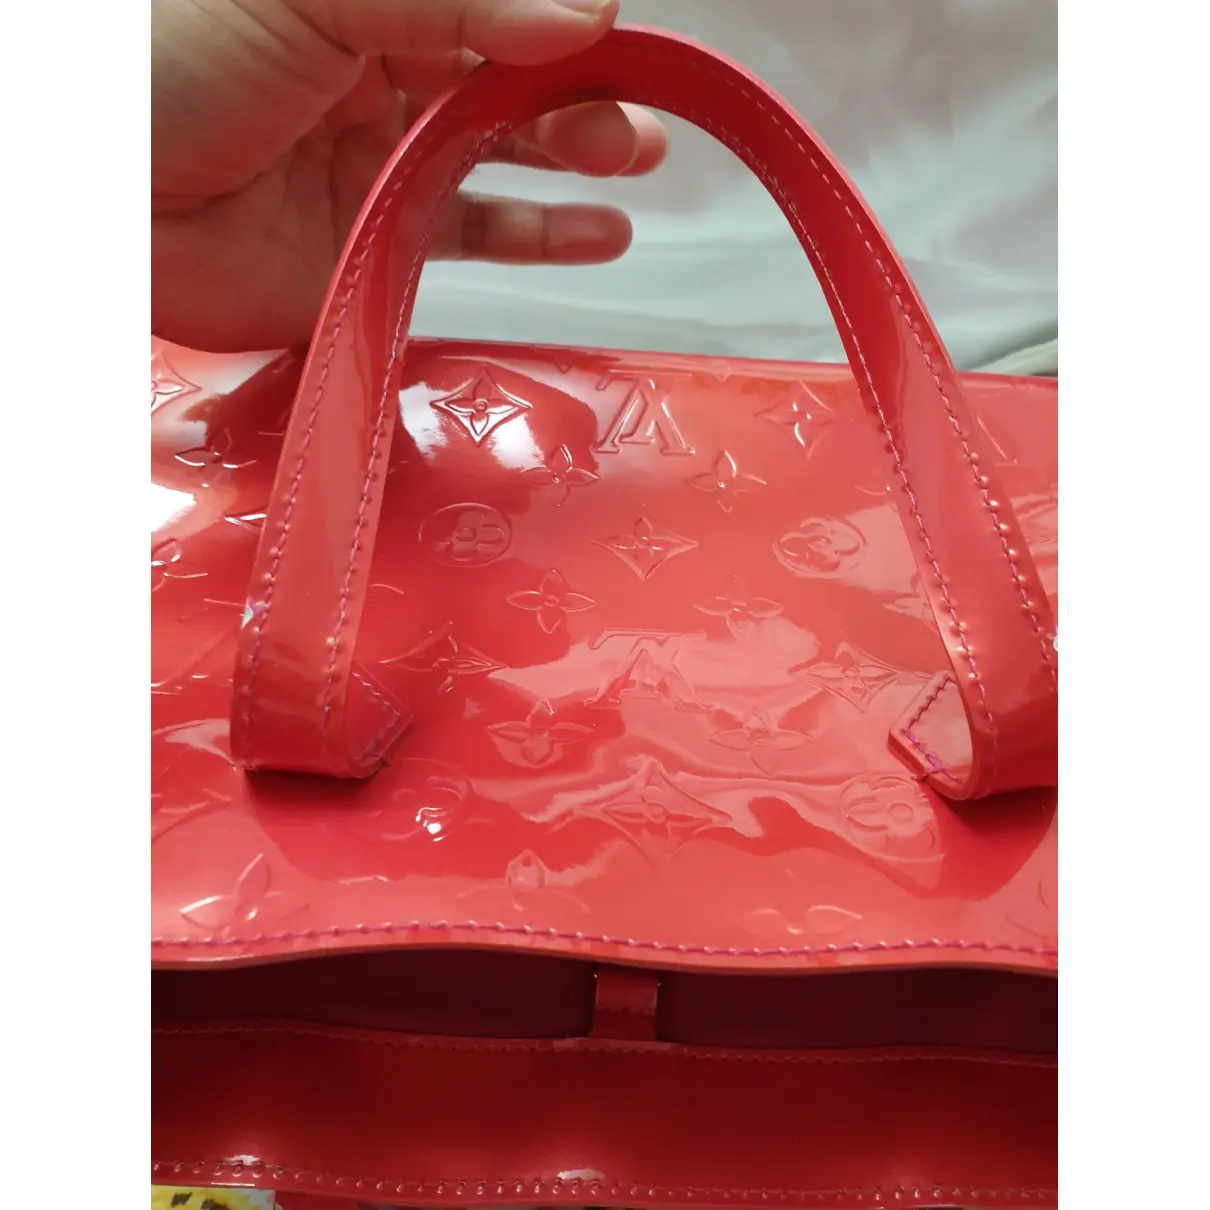 Wilshire patent leather handbag Louis Vuitton